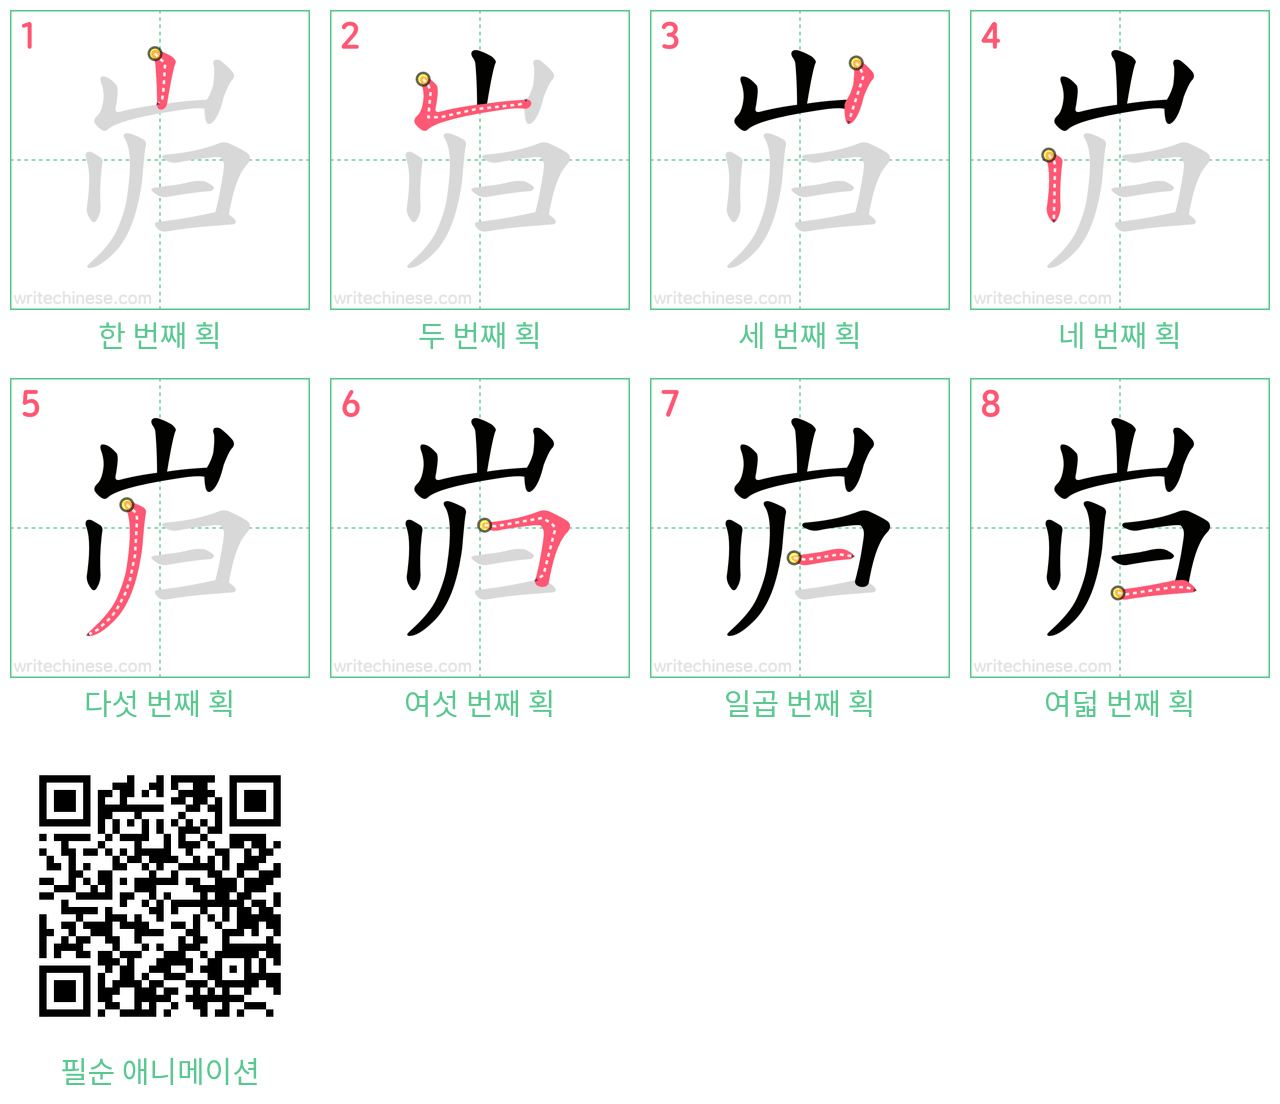 岿 step-by-step stroke order diagrams